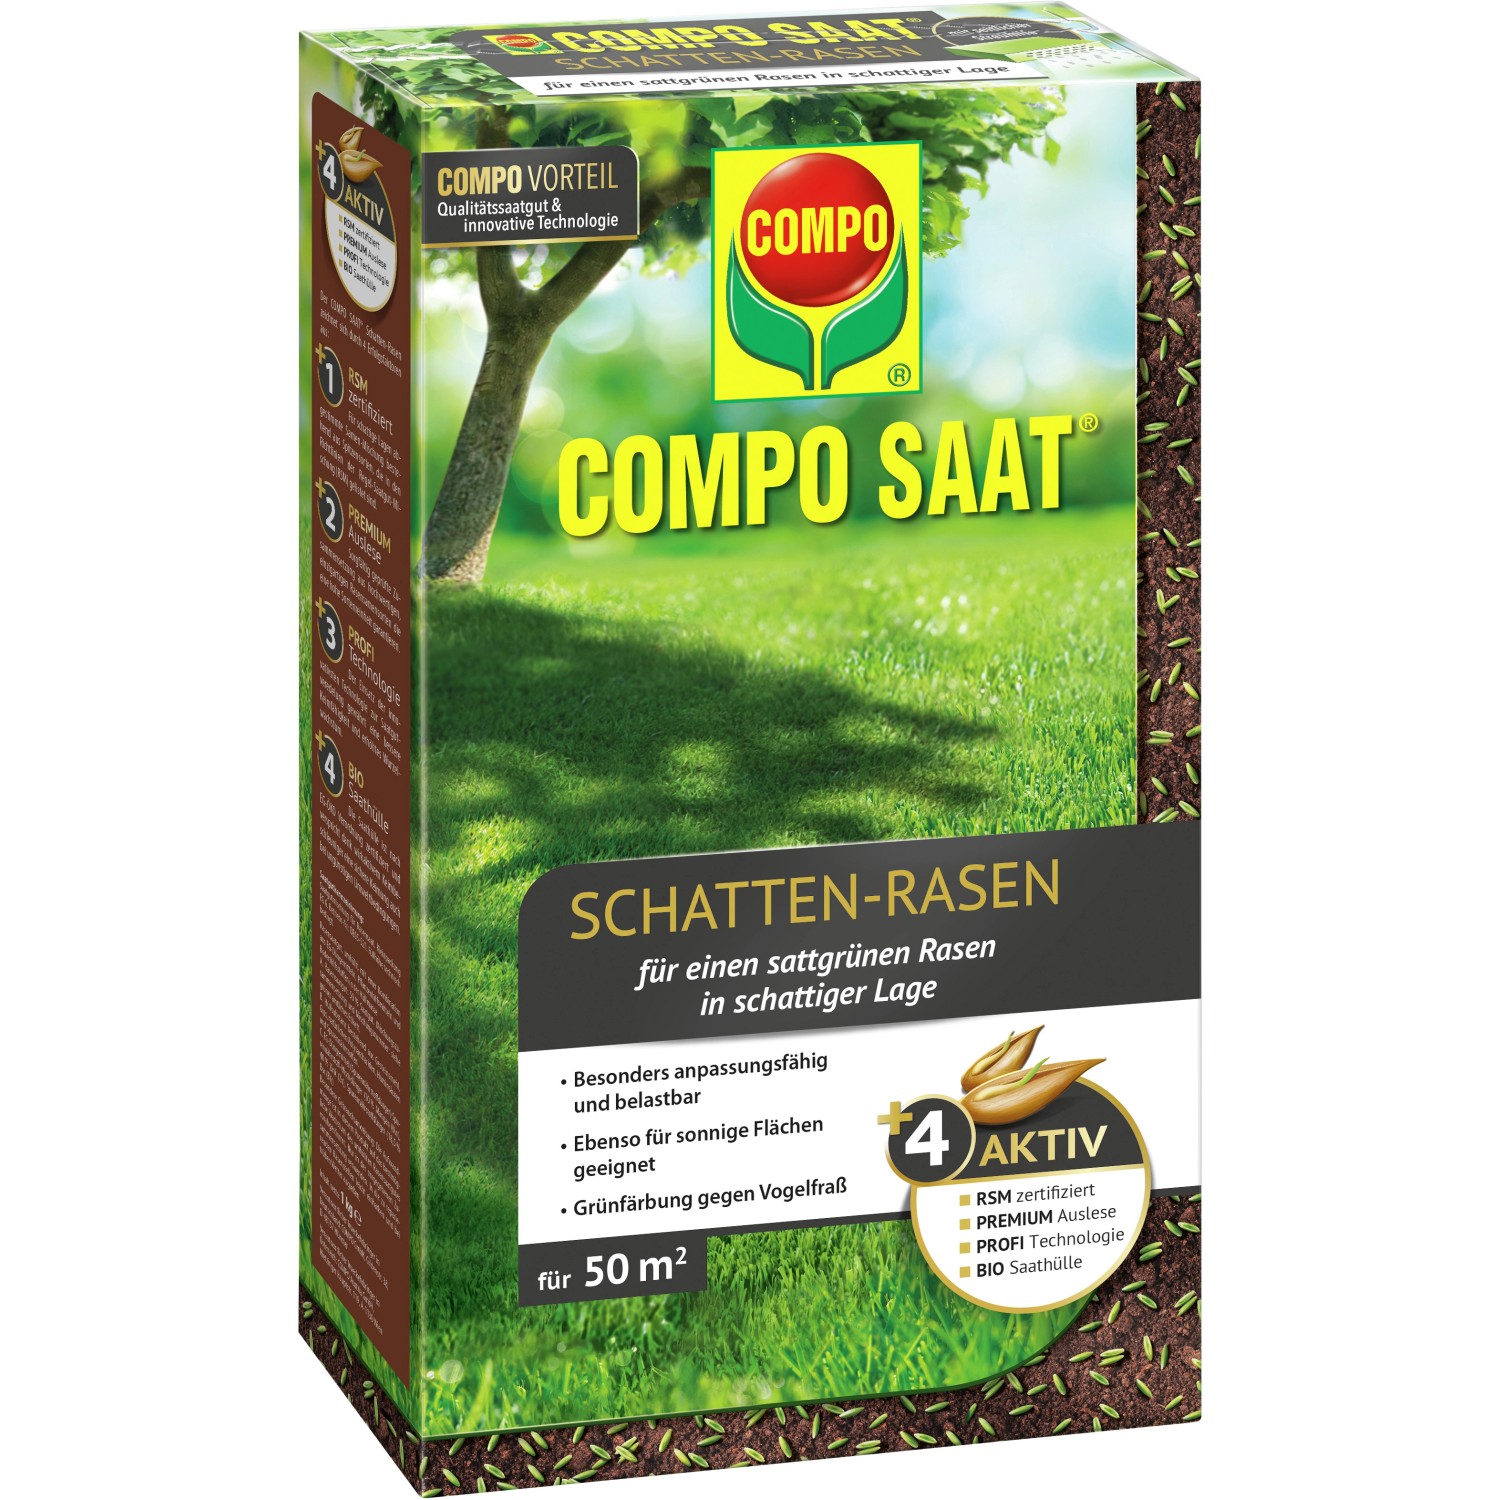 Compo Saat Schatten-Rasen 1 kg von Compo